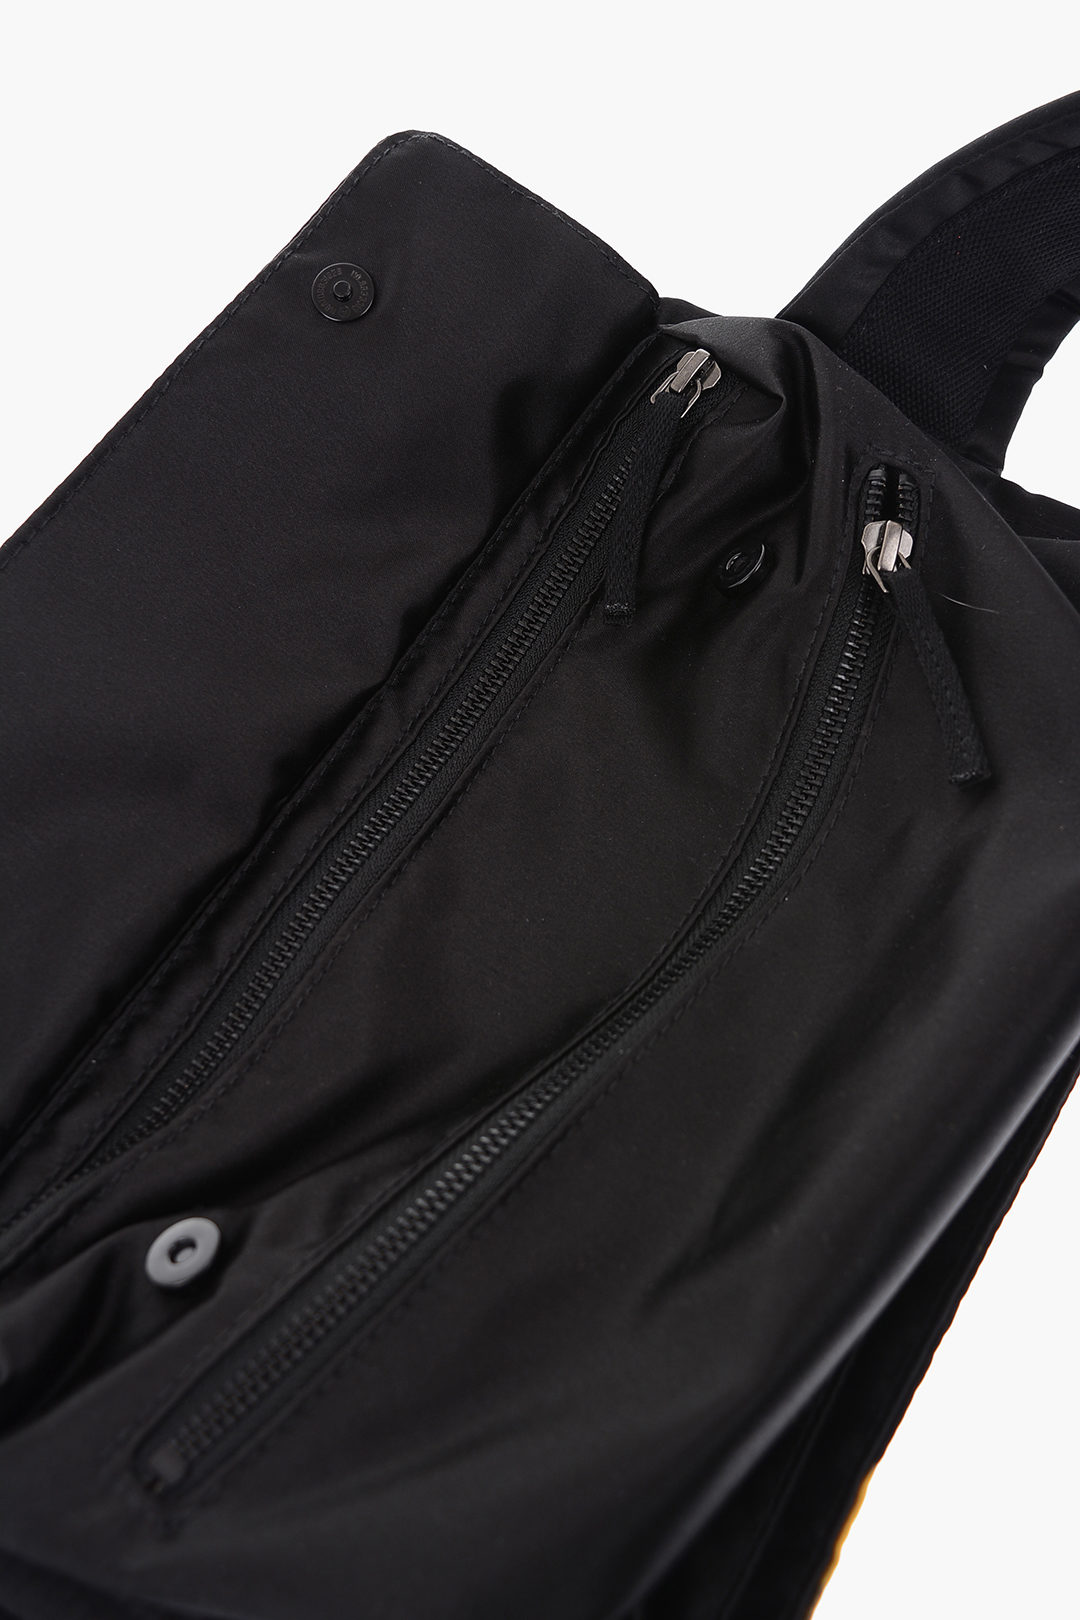 Eastpak X Raf Simons Poster Belt Bag in Black for Men